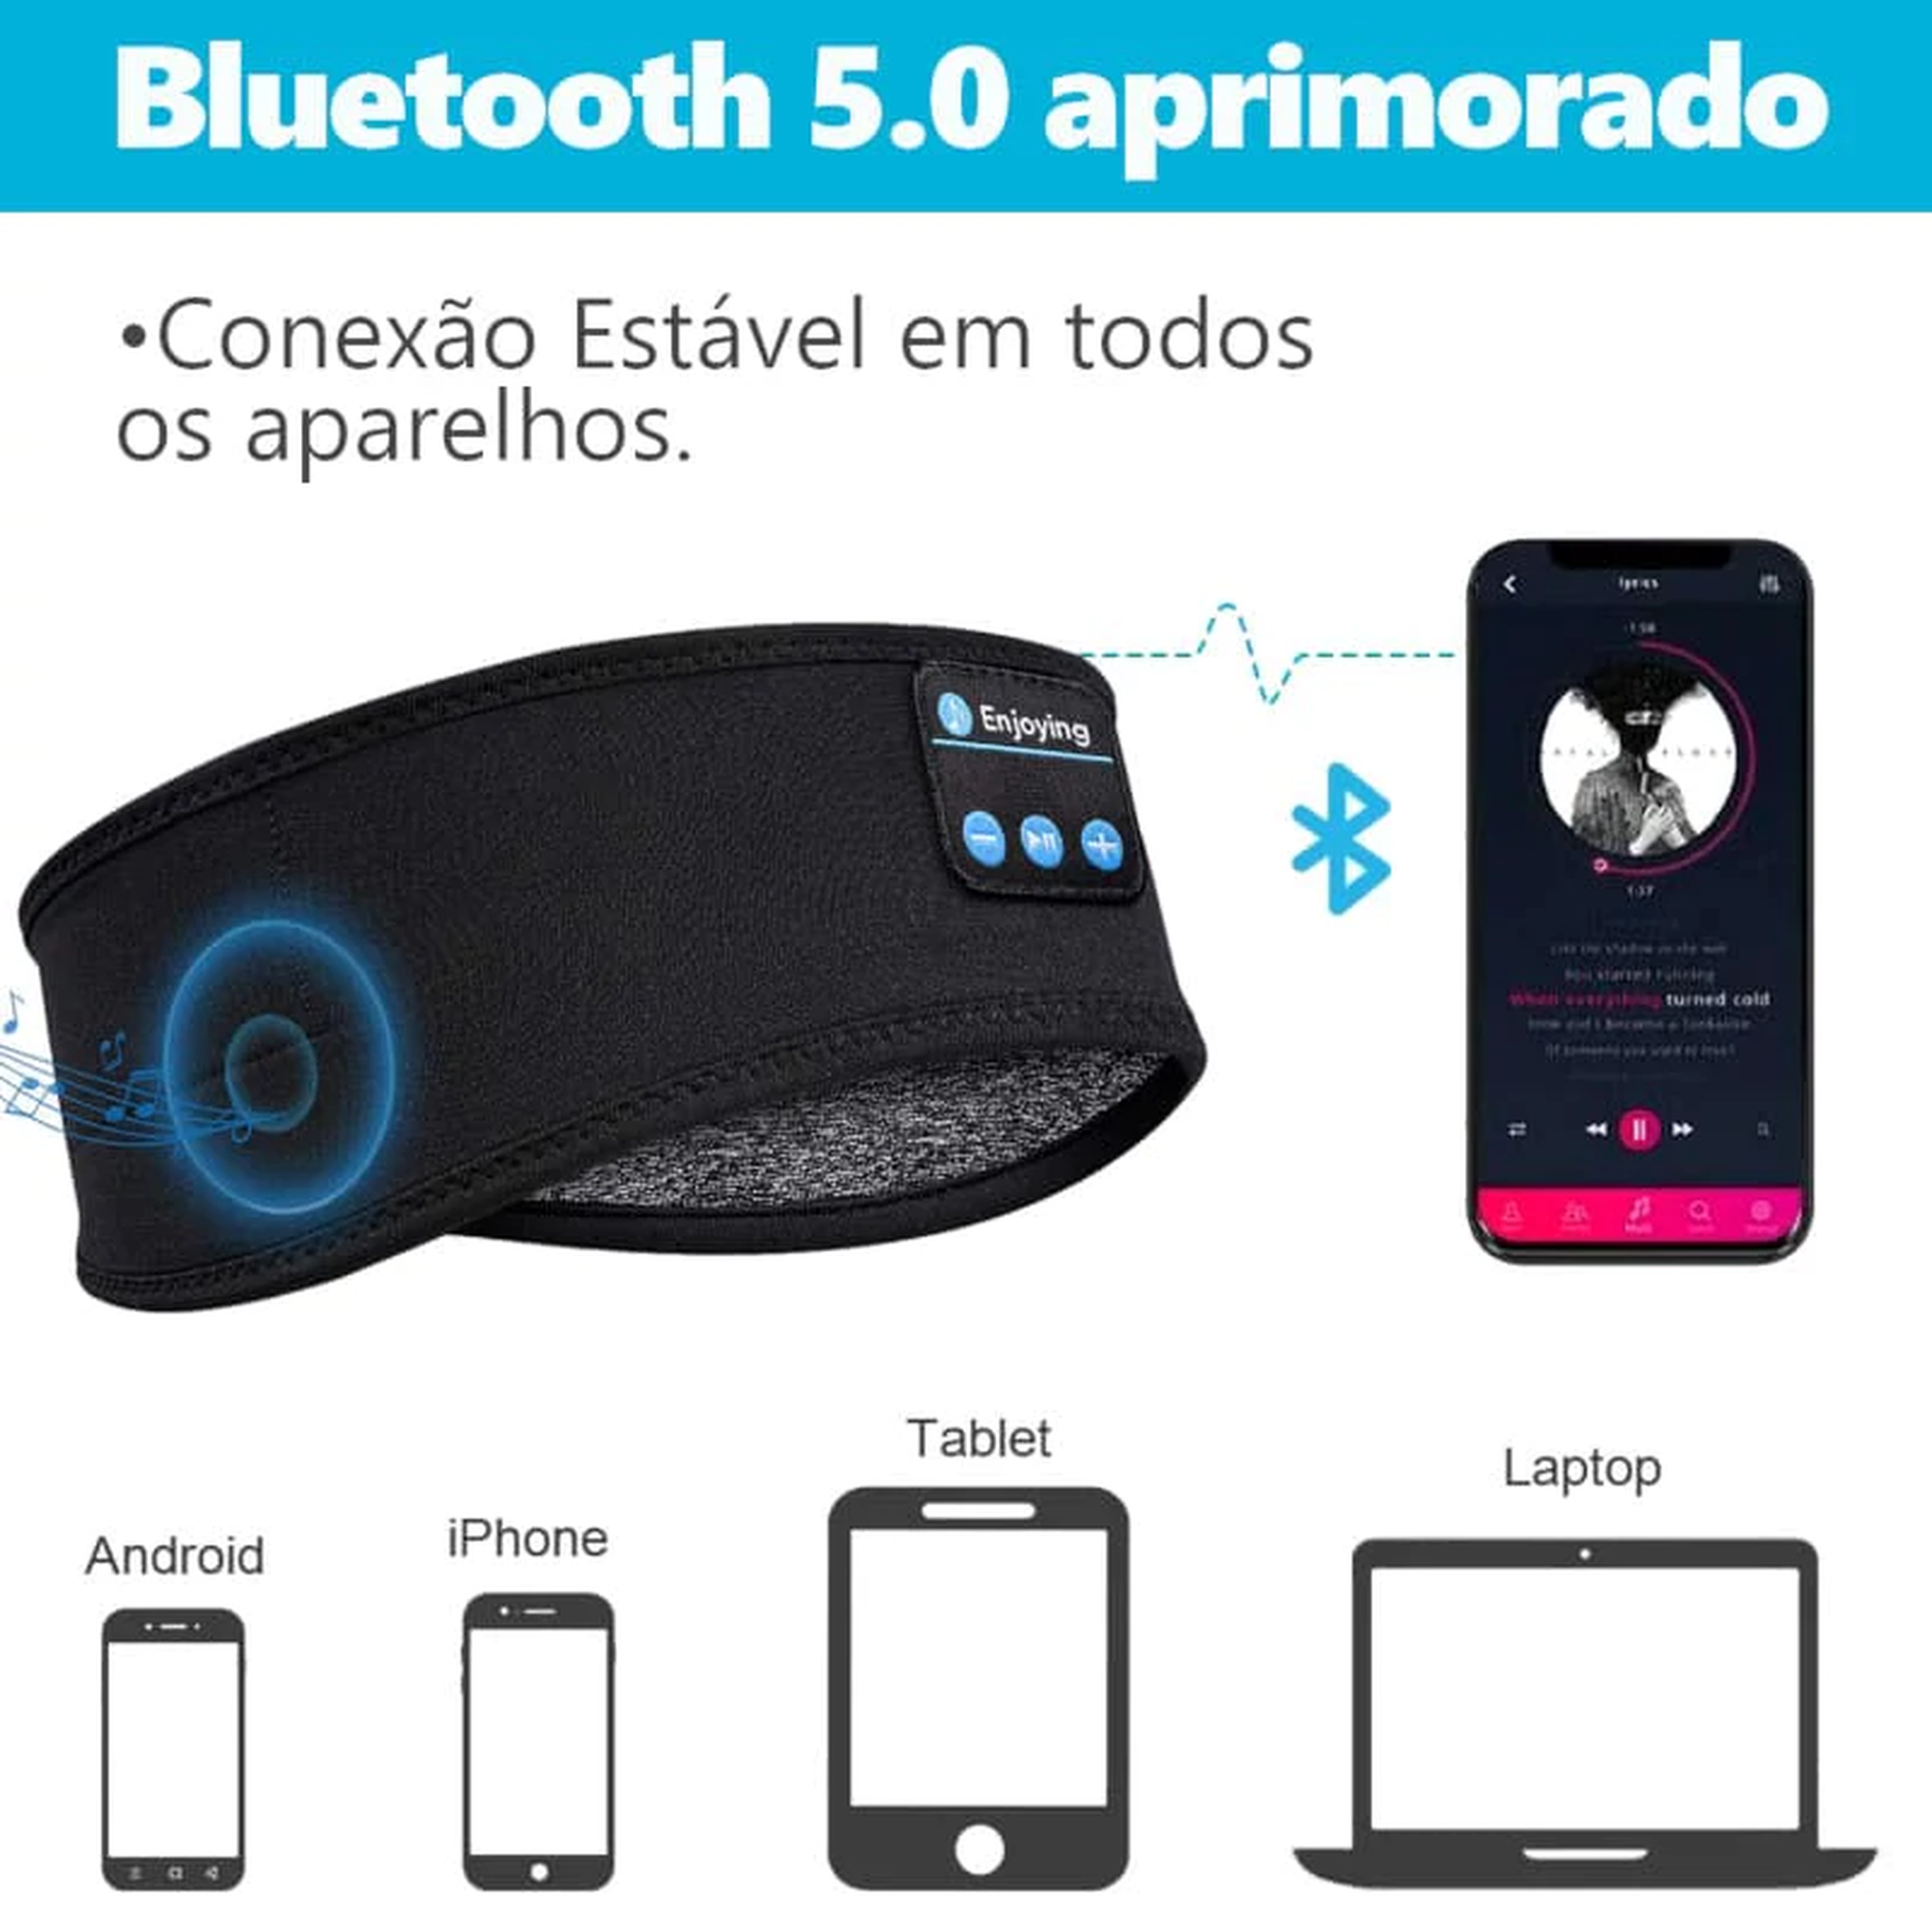 Fone Para Dormir Bandana Bluetooth 5.0 - SoundBand + Ebook Grátis